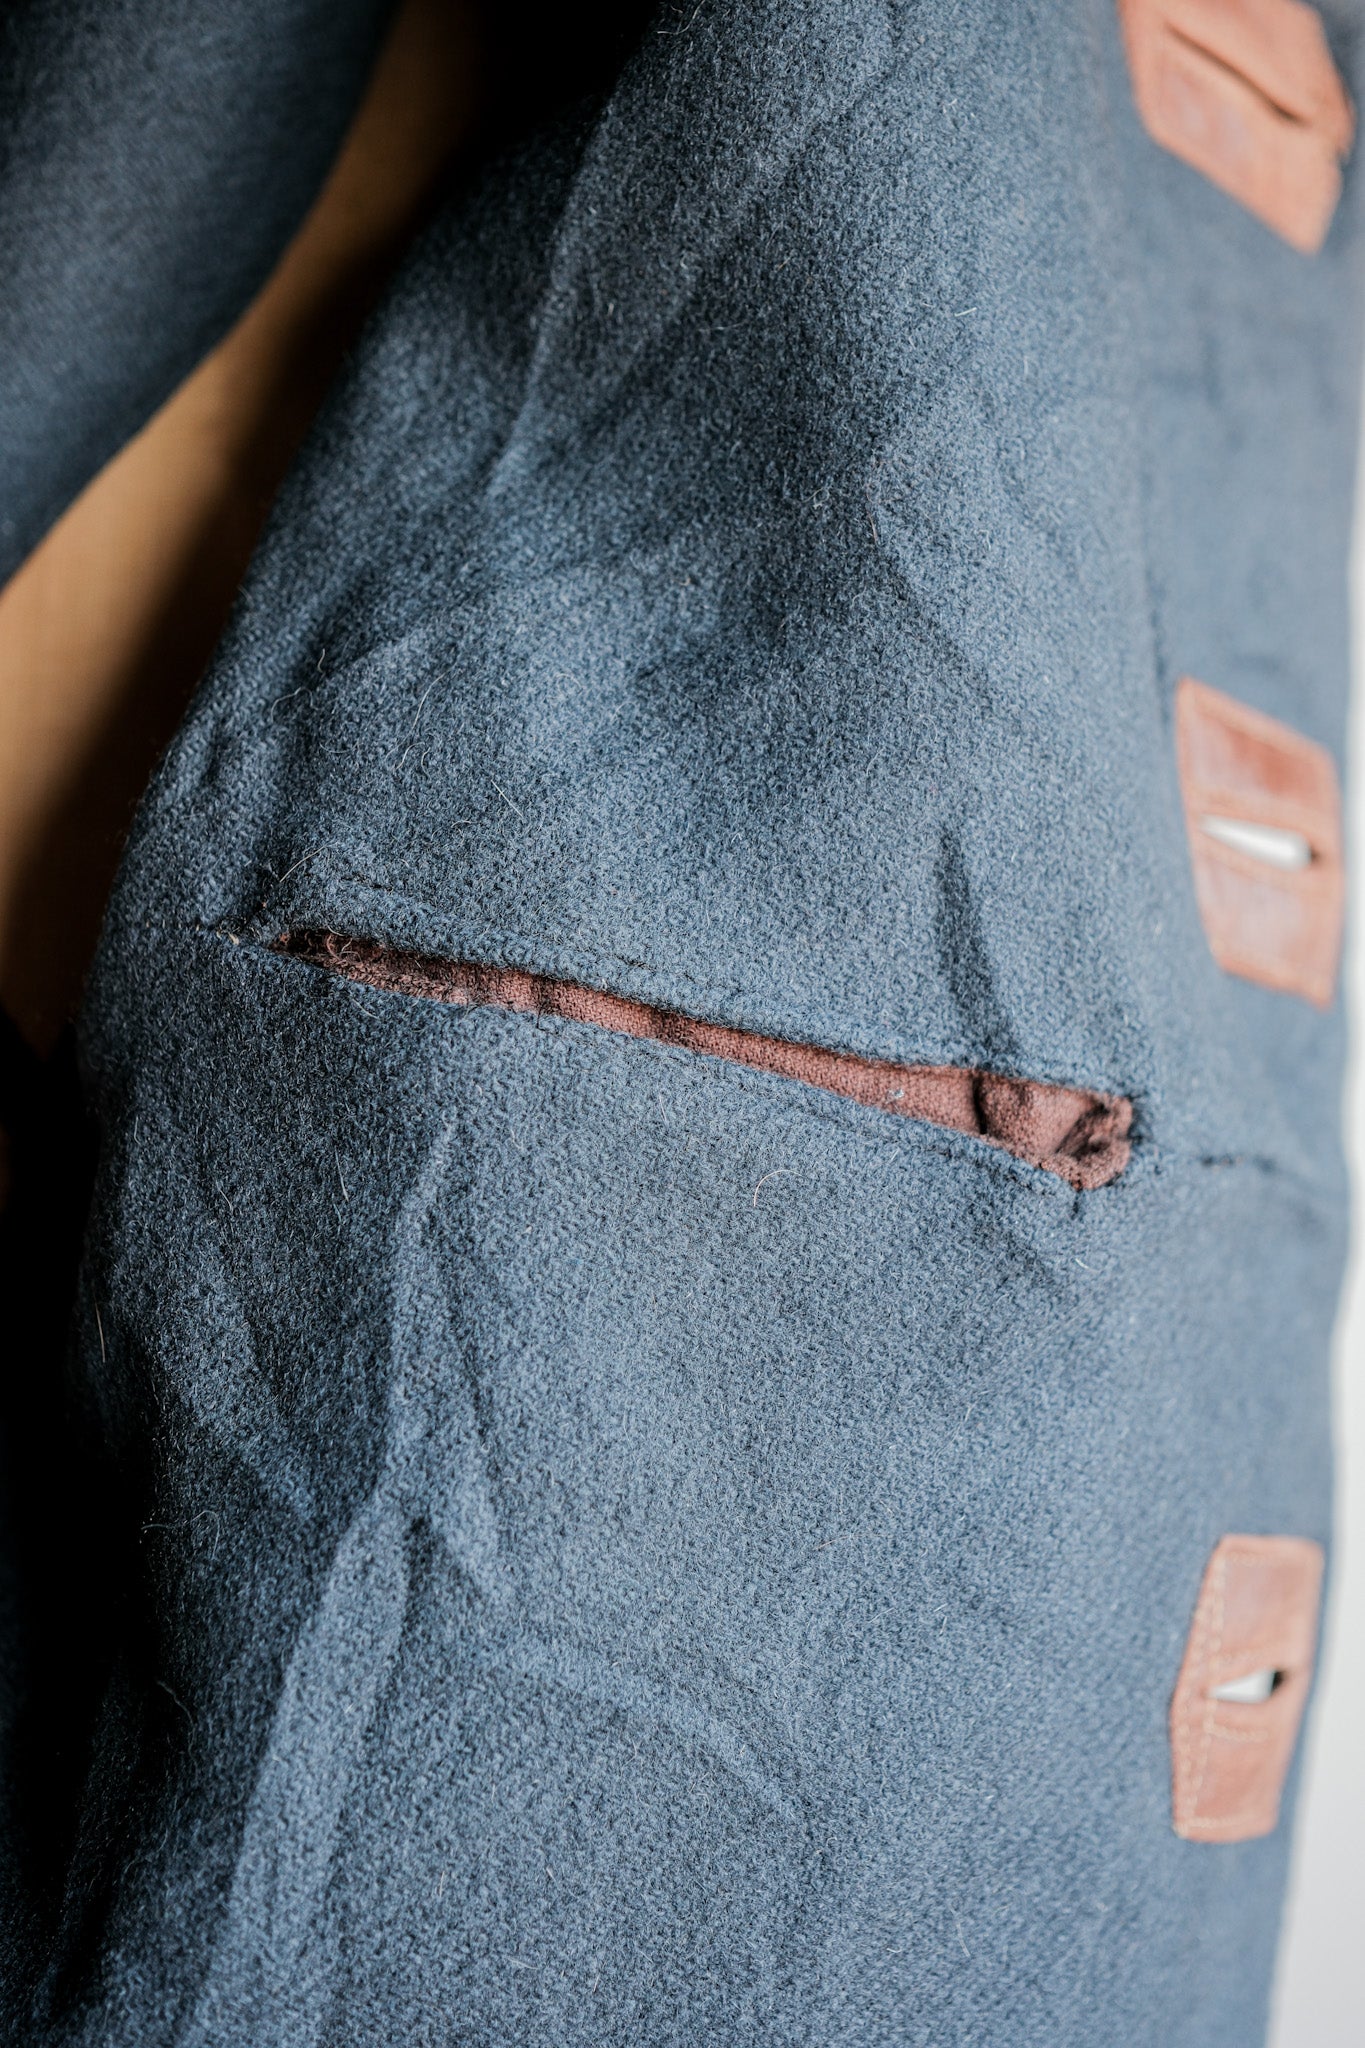 【~40's】WWⅡ British Army Jerkin Leather Vest Size.2 "Modified"